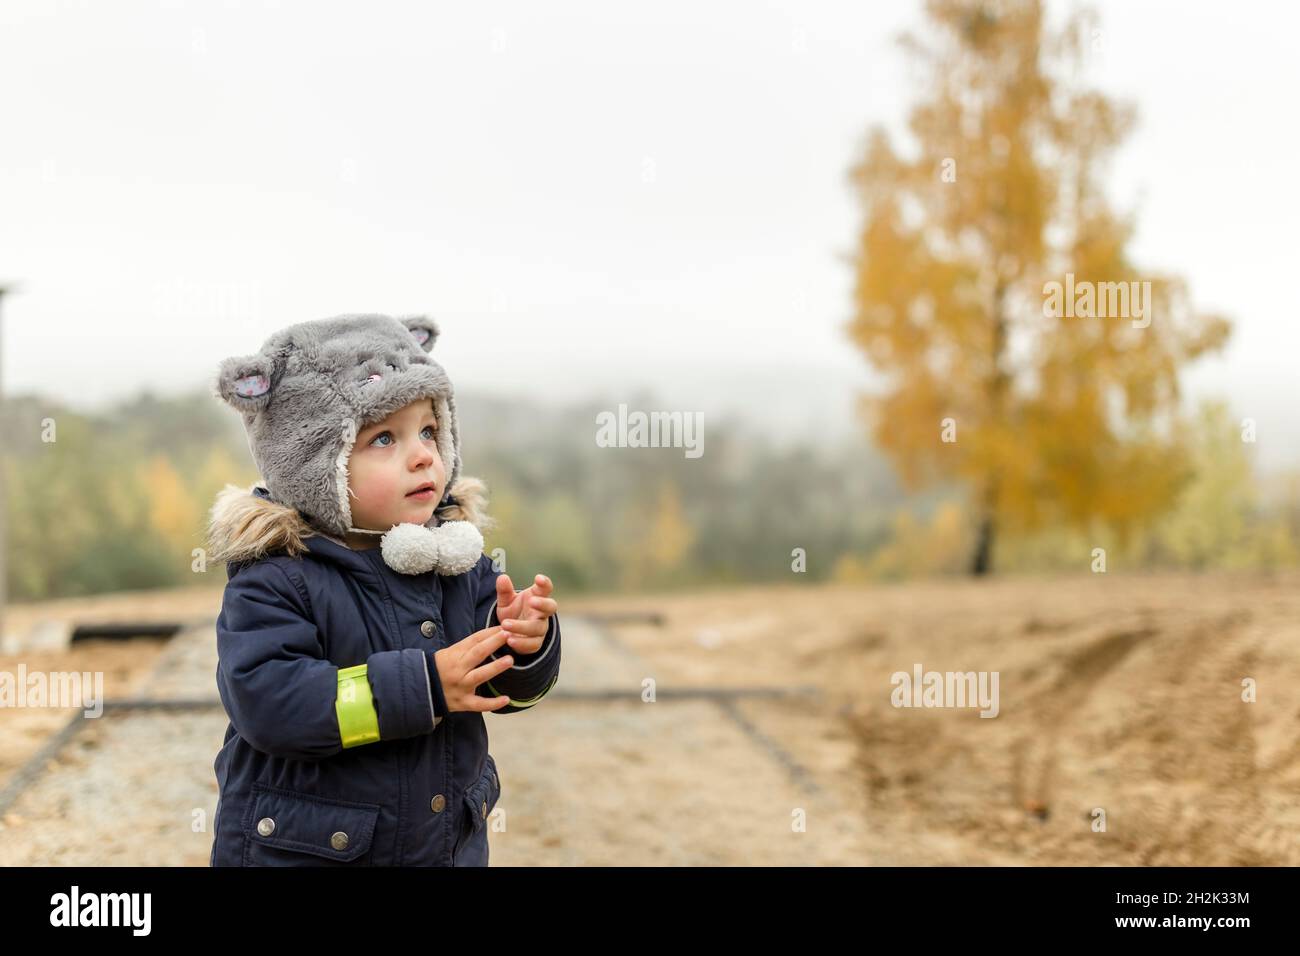 Niño pequeño con sombrero peludo mirando en la cima de una colina Foto de stock